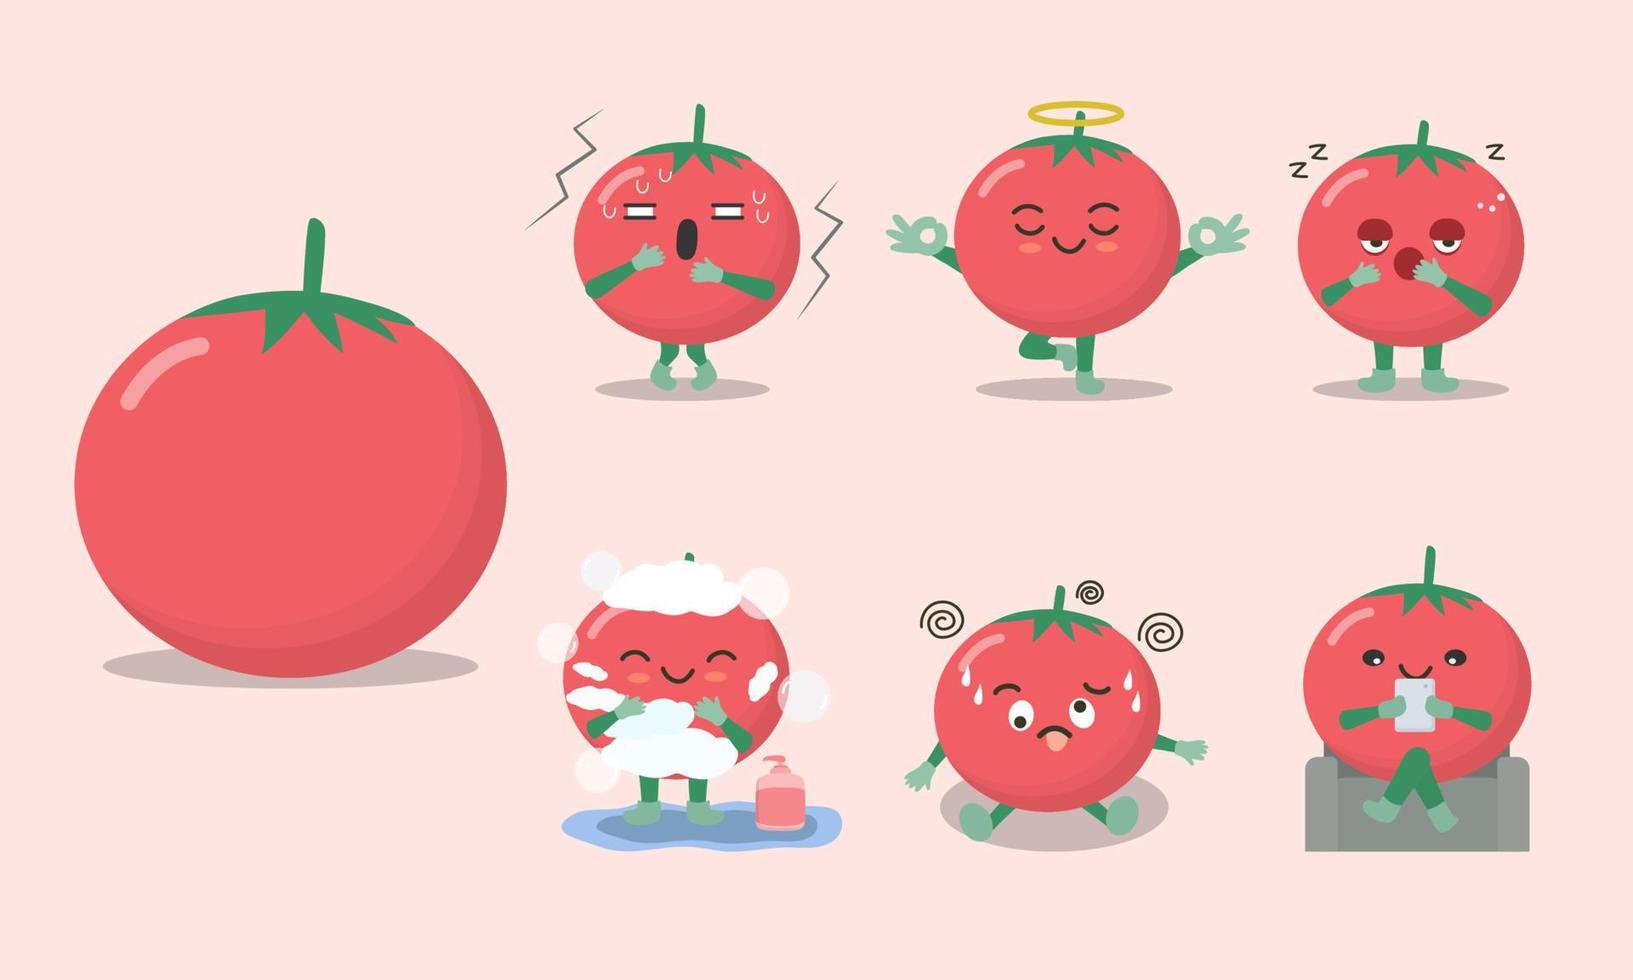 lindos y divertidos personajes de tomate en varias poses y emocionales como miedo, yoga, sueño, baño, confusión, comodidad. vector